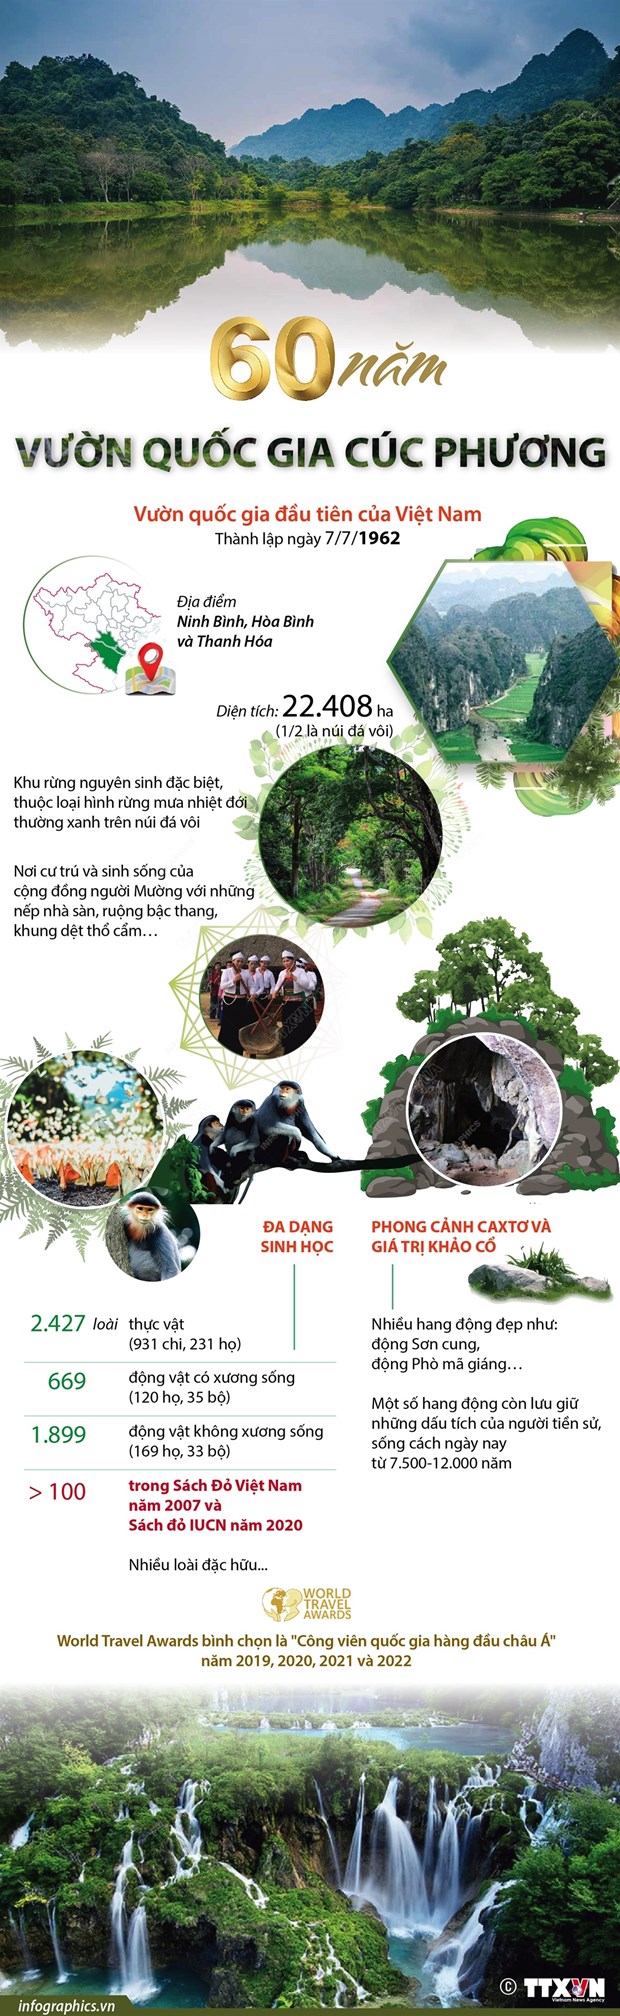 Phát triển du lịch sinh thái, bền vững ở Vườn Quốc gia Cúc Phương - Ảnh 5.